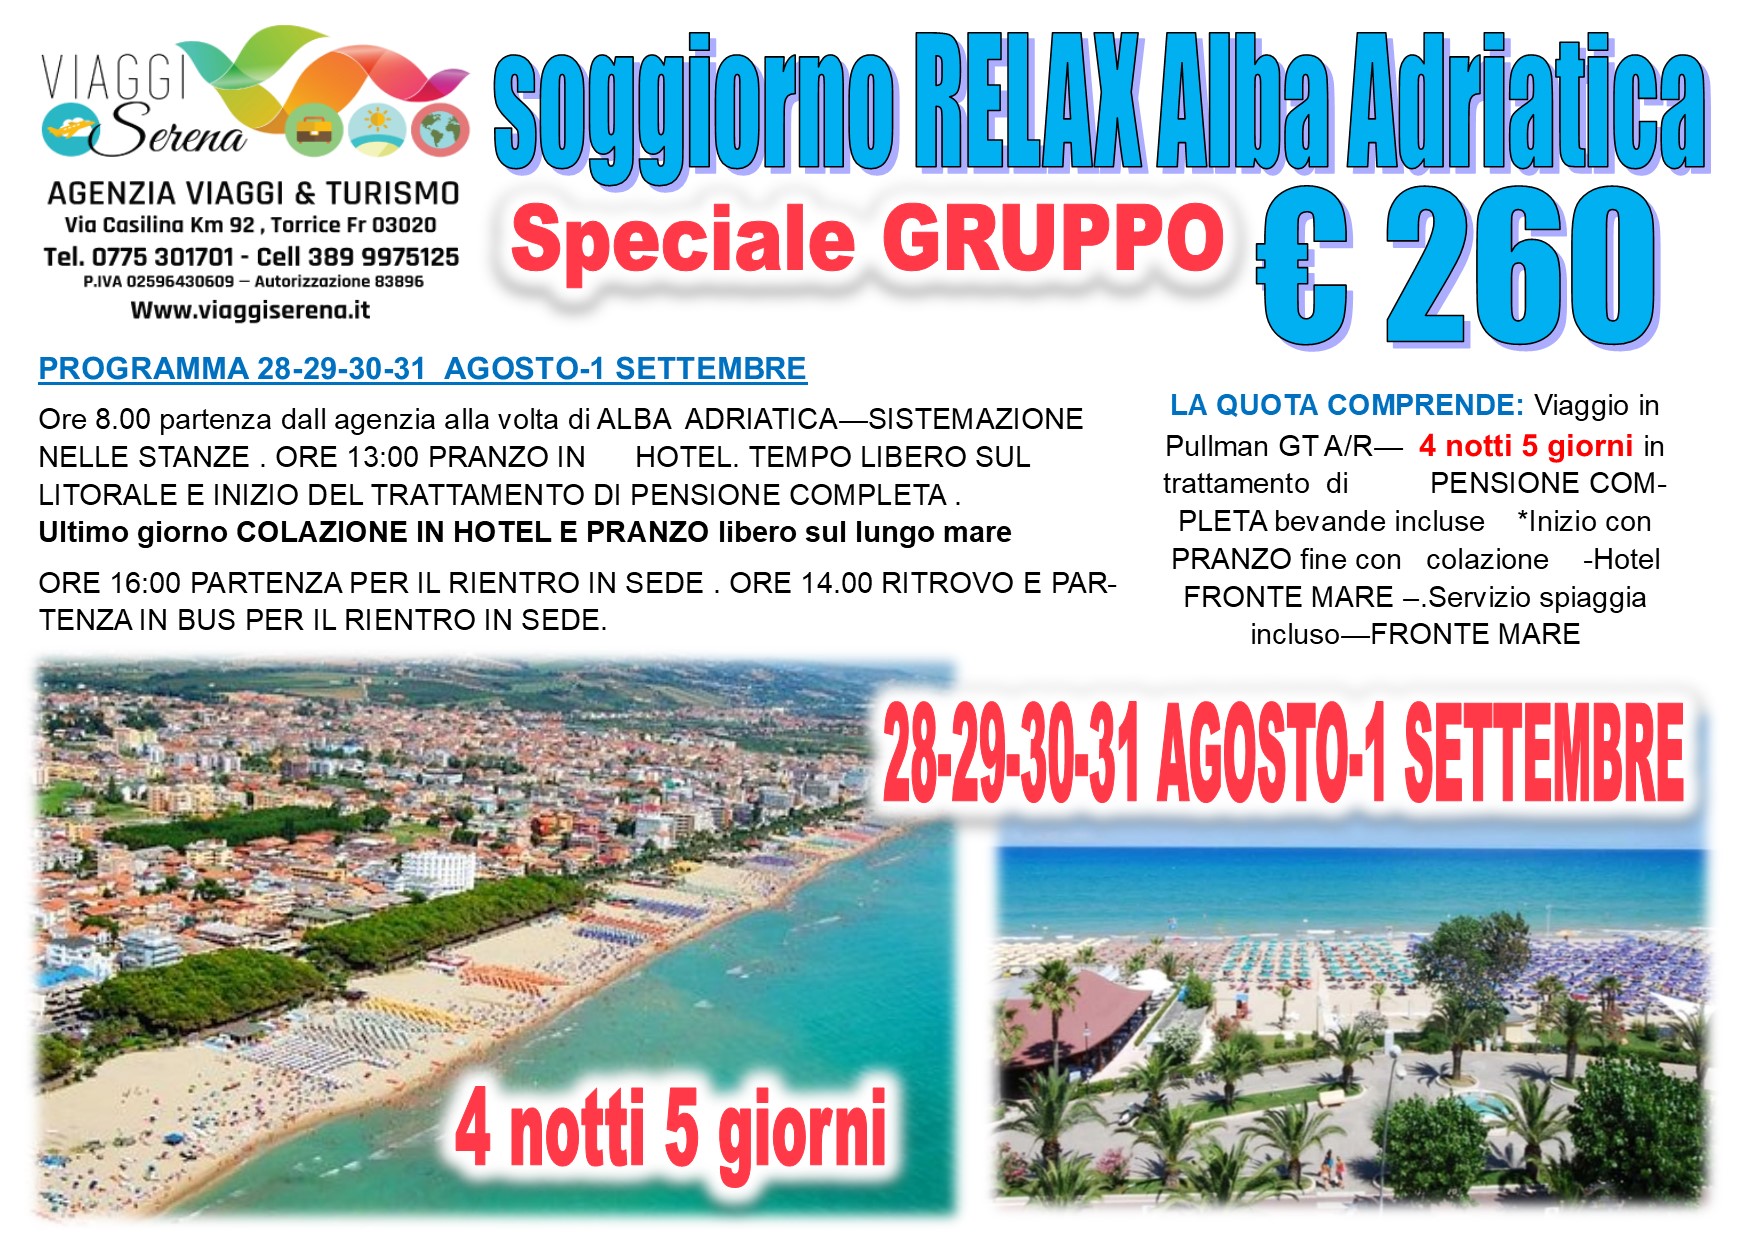 Viaggi di Gruppo: Soggiorno Mare ALBA ADRIATICA speciale 28-Agosto -1 Settembre €260,00